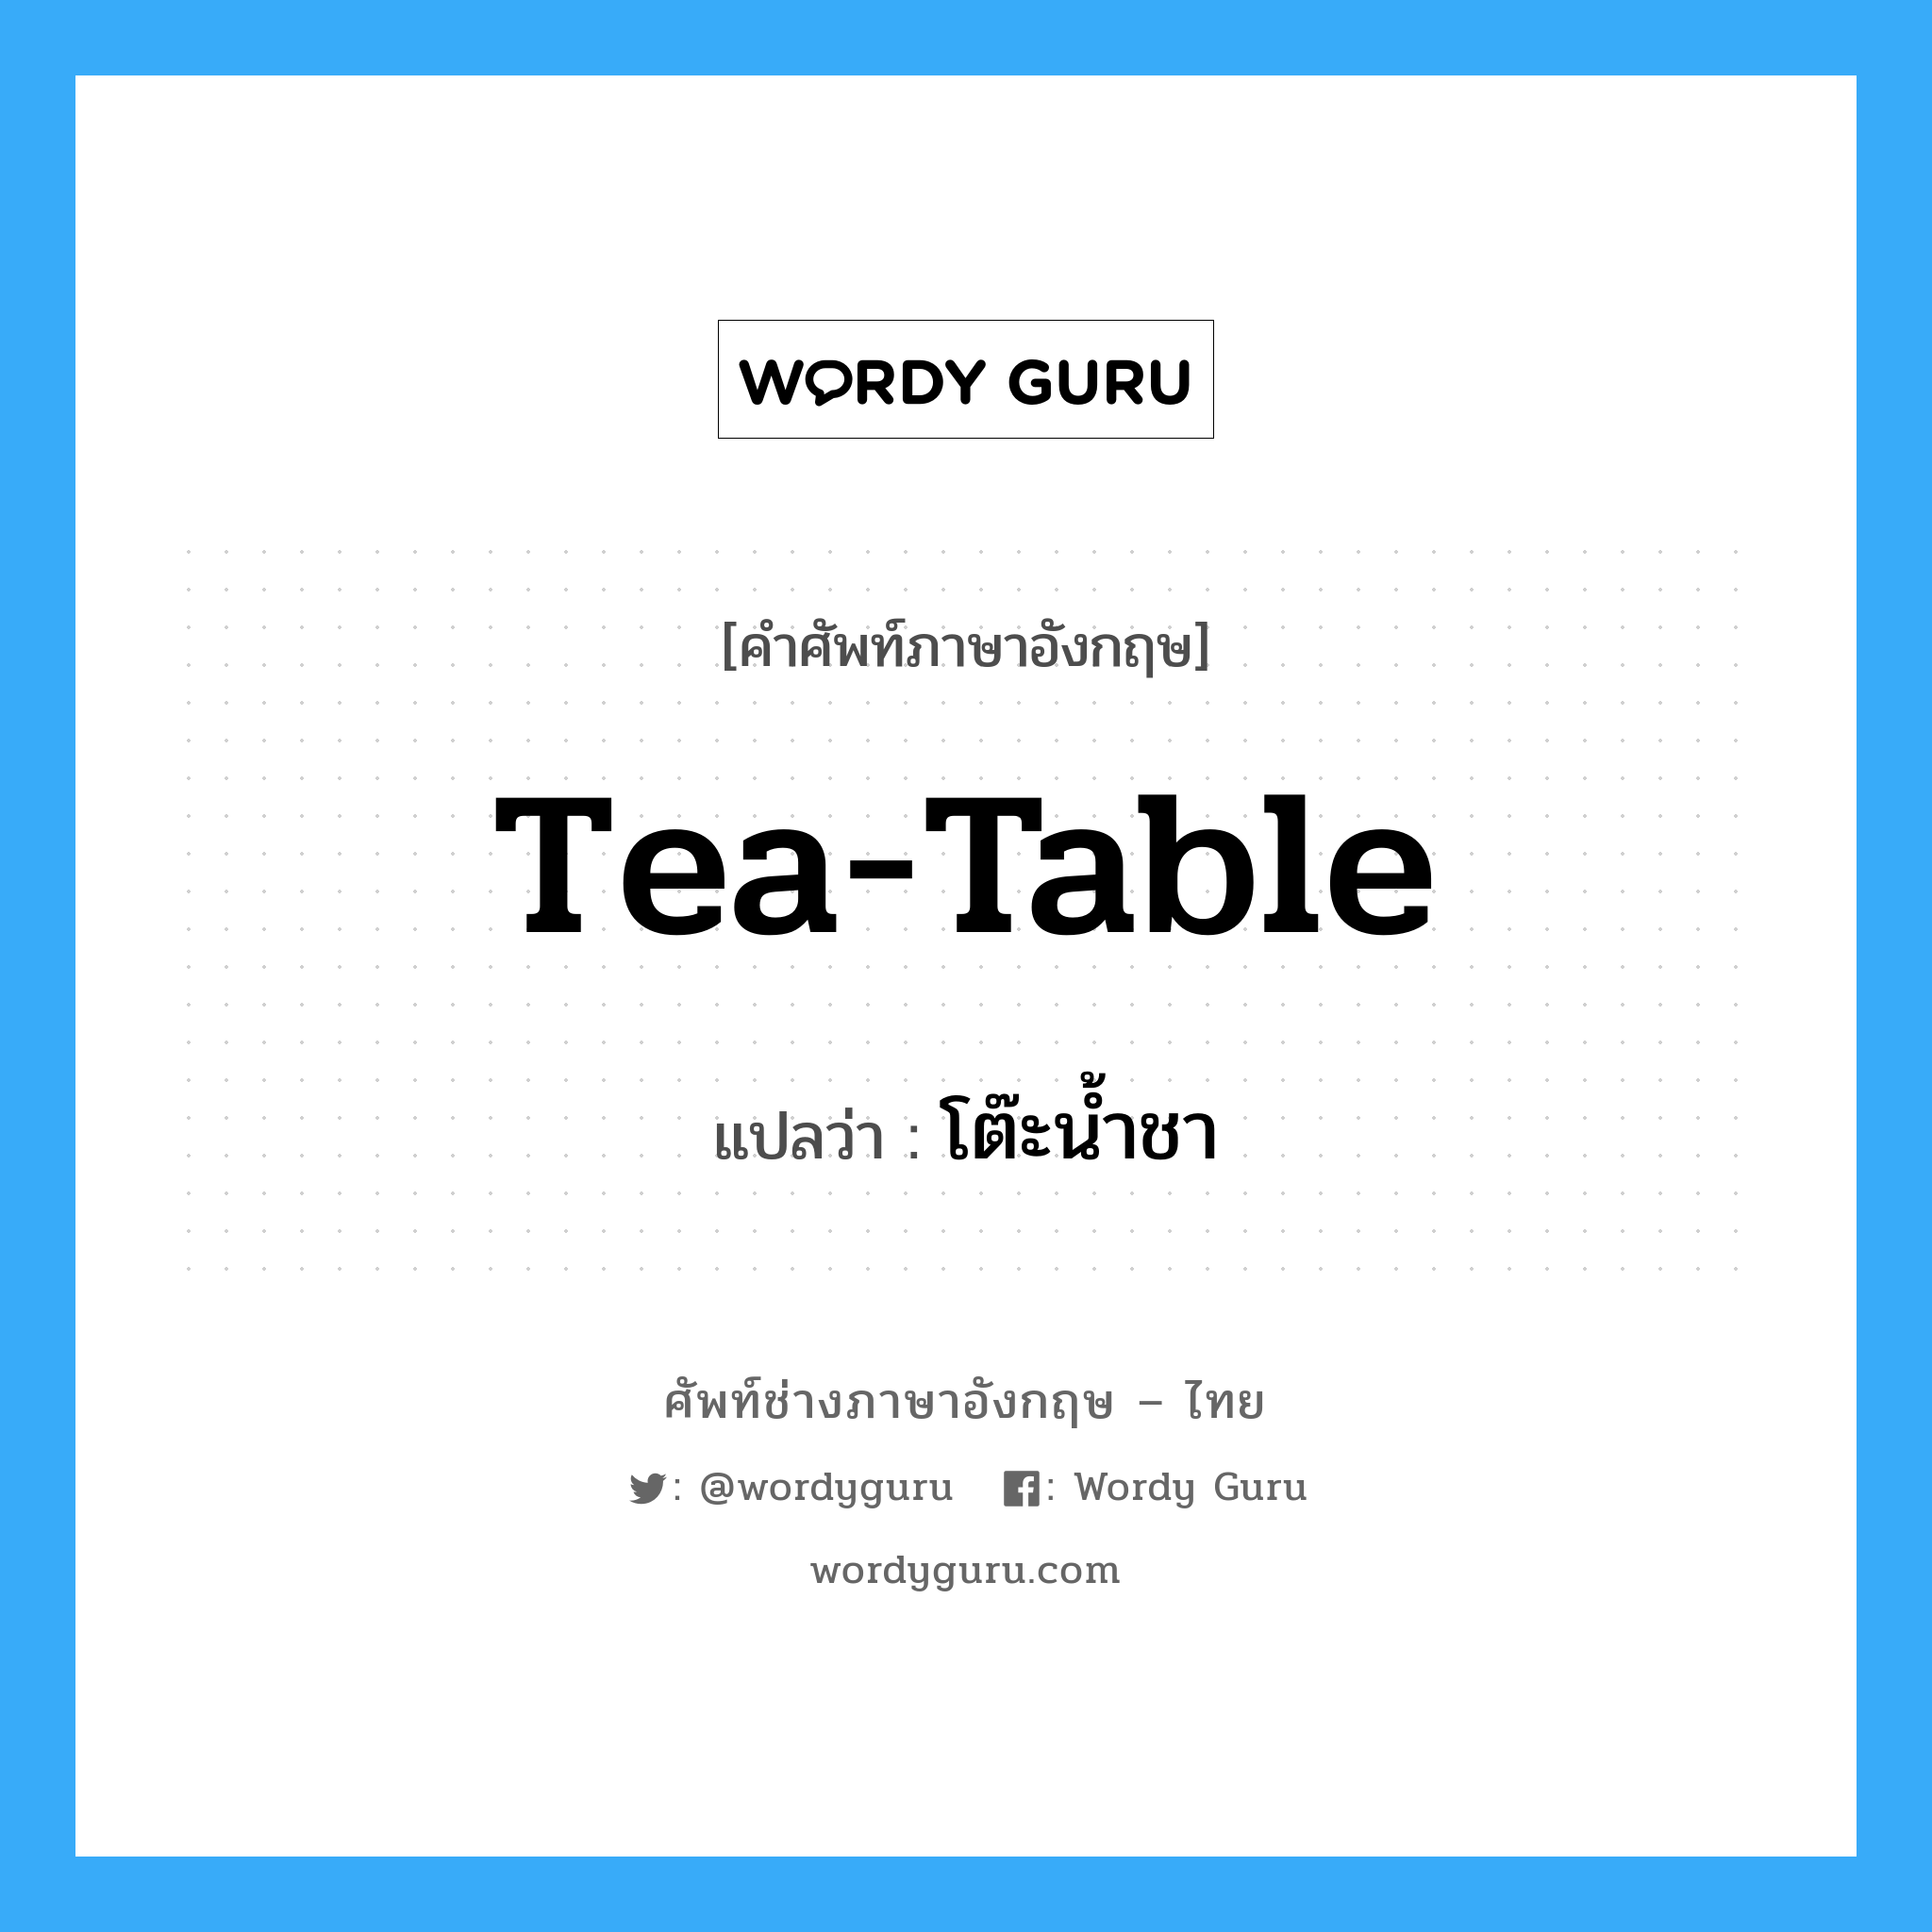 tea-table แปลว่า?, คำศัพท์ช่างภาษาอังกฤษ - ไทย tea-table คำศัพท์ภาษาอังกฤษ tea-table แปลว่า โต๊ะน้ำชา